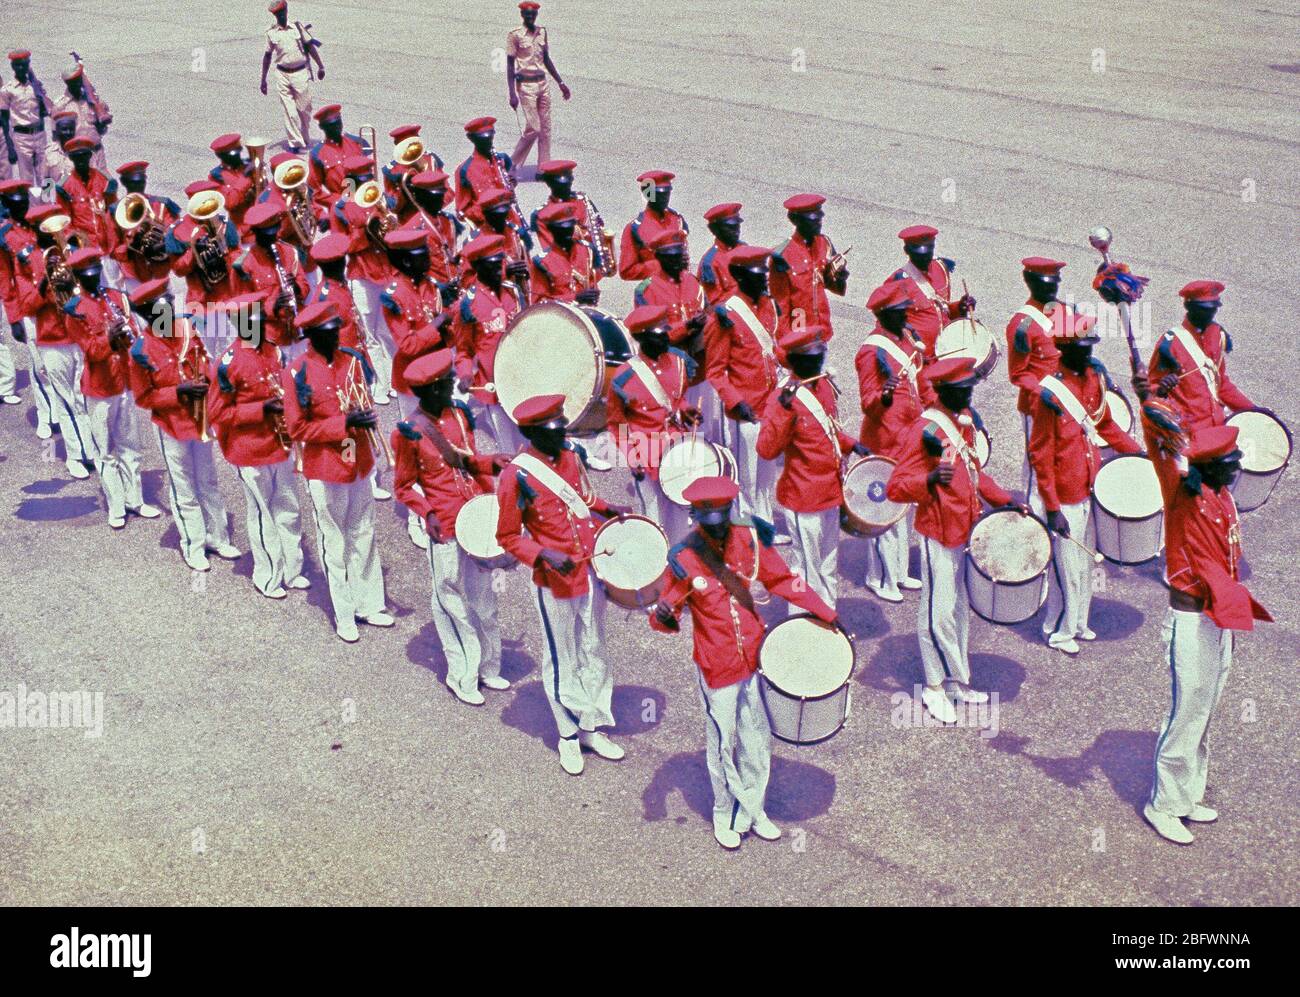 1983 - Ein somalischer Streitkräfte Band geht in Überprüfung während der Übung östlichen Wind '83 Zeremonie. Östlichen WIND ist die amphibische Landung Phase der Übung Bright Star '83. Stockfoto